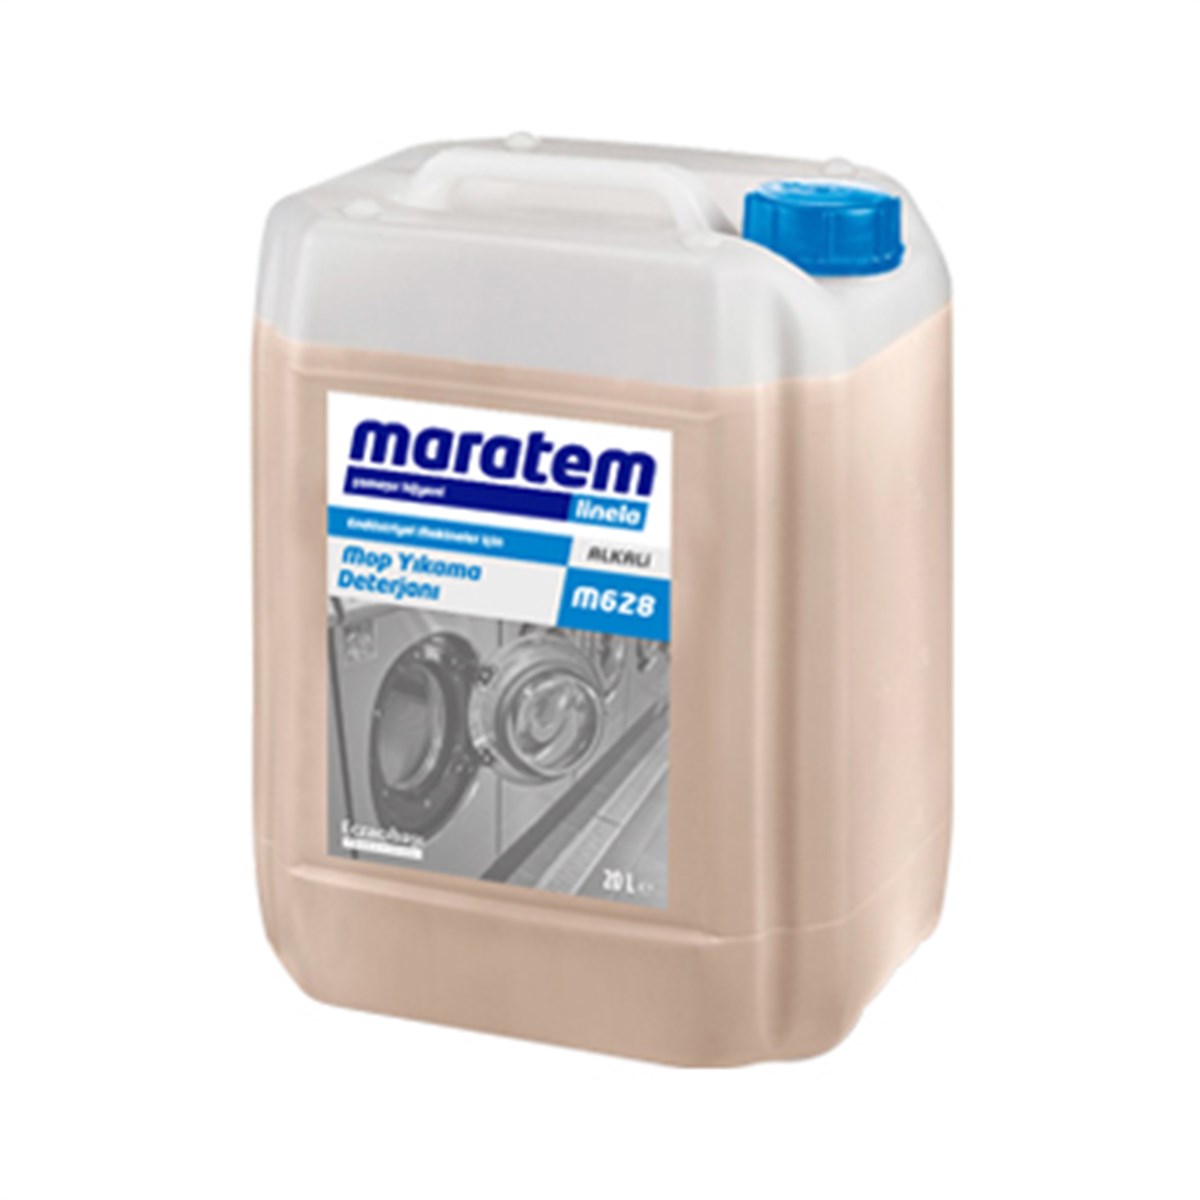 Maratem M628 Mop Yıkama Deterjanı Sıvı 20 Litre